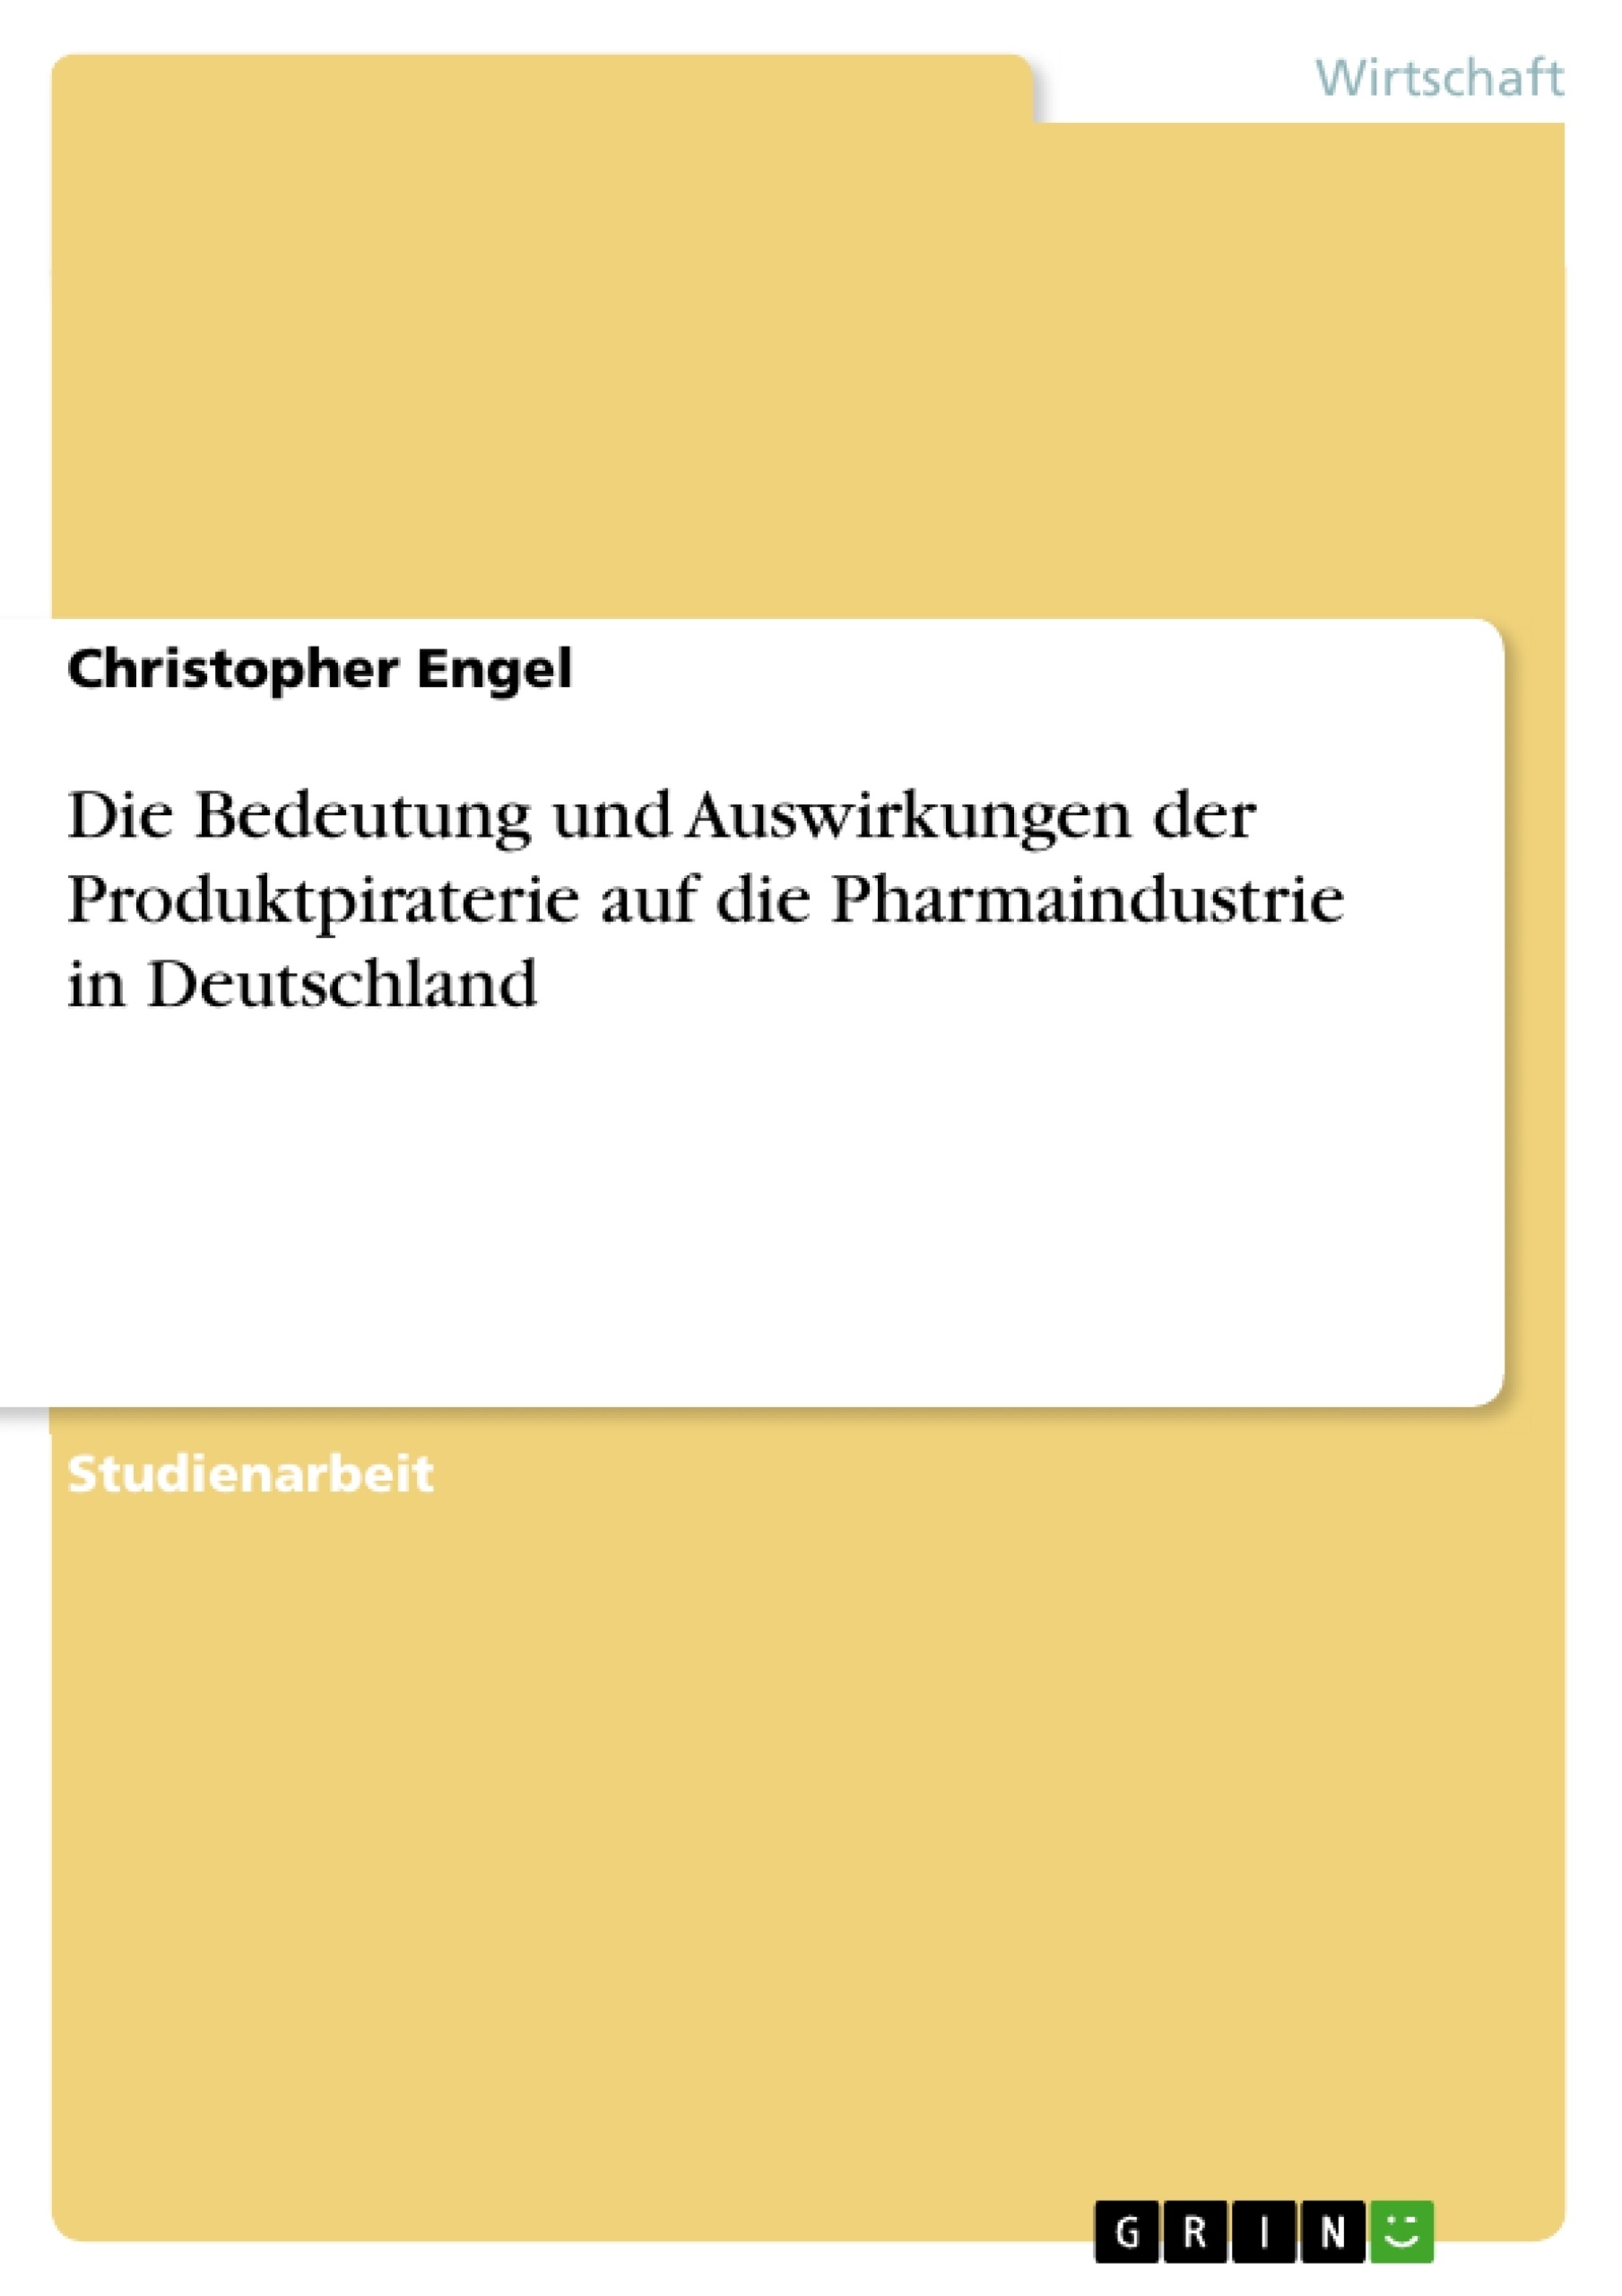 Titre: Die Bedeutung und Auswirkungen der Produktpiraterie auf die Pharmaindustrie in Deutschland